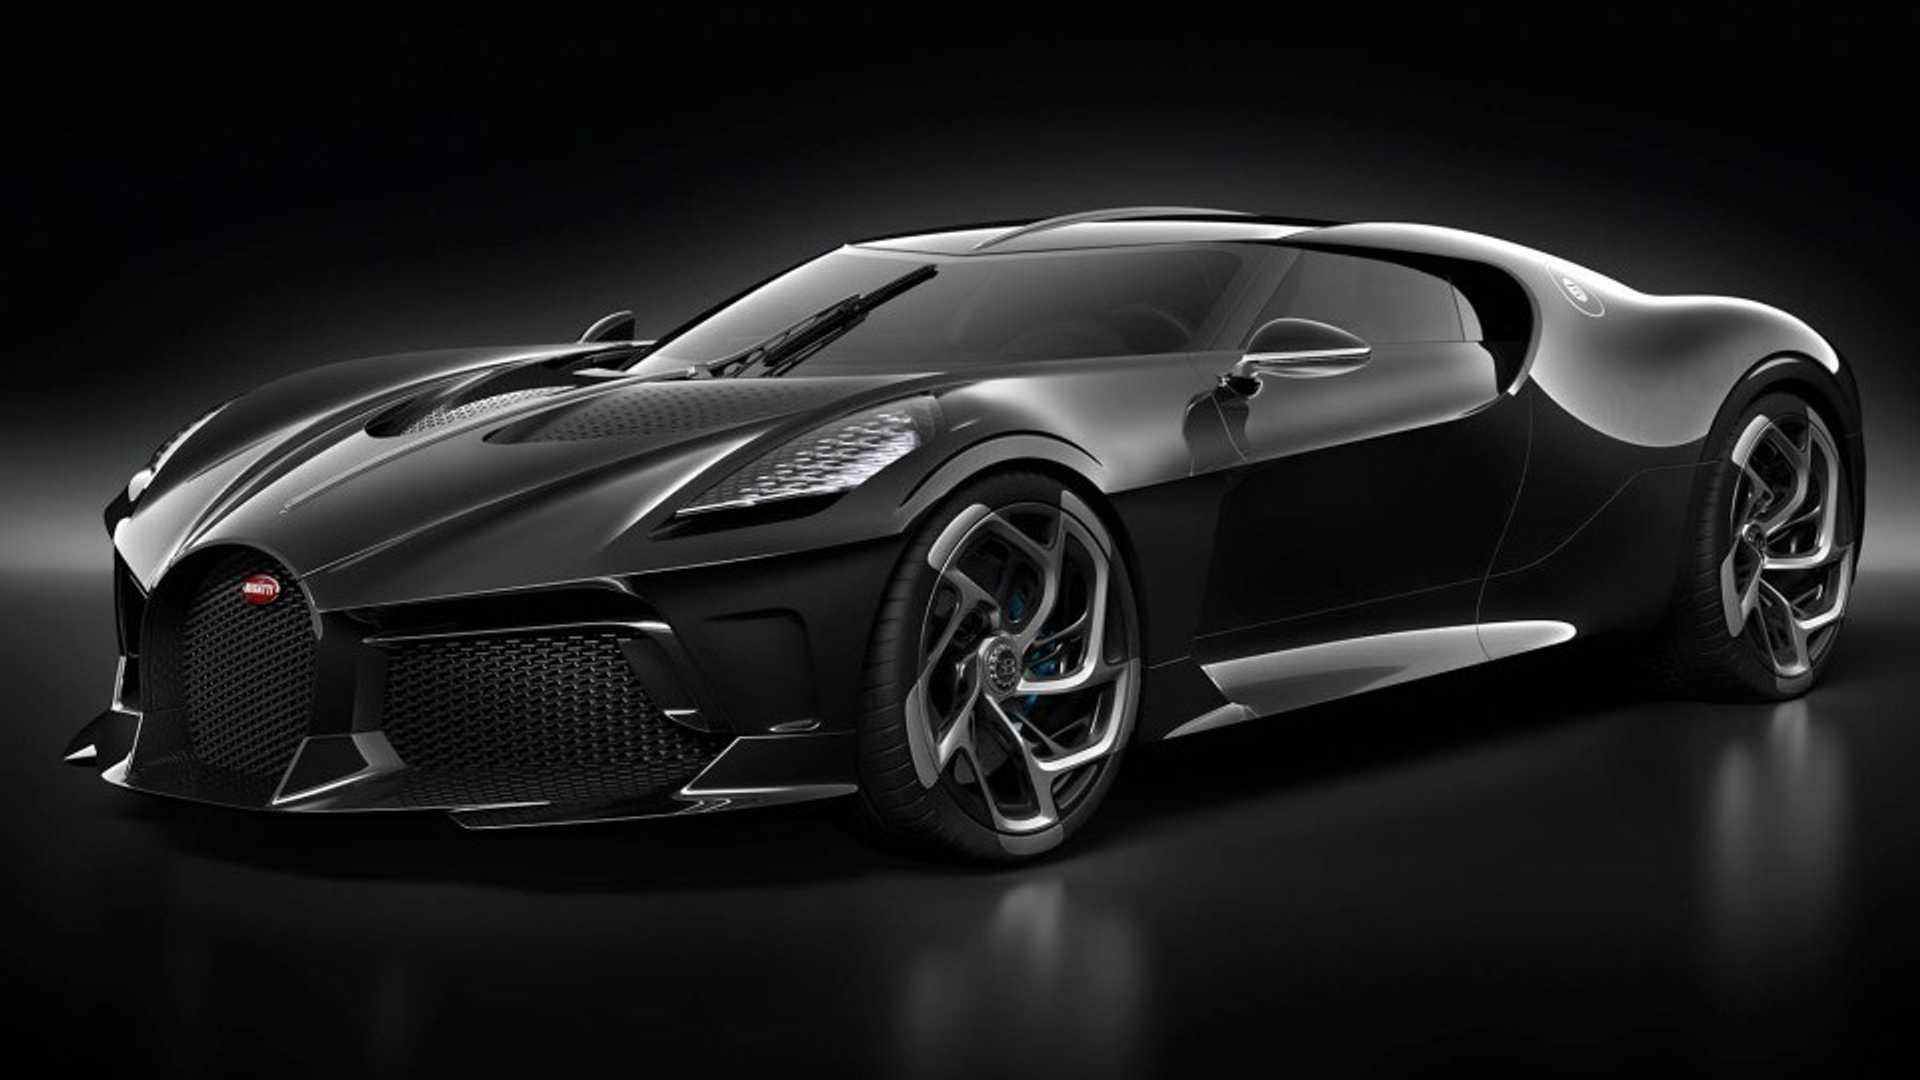 Bugatti La Voiture Noire sở hữu thiết kế đỉnh cao và đầy sang trọng. Bạn sẽ không tìm thấy bất cứ chiếc xe nào khác tương tự với em nó. Nếu bạn muốn đổi mới hình nền điện thoại của mình, đây chính là lựa chọn hoàn hảo.